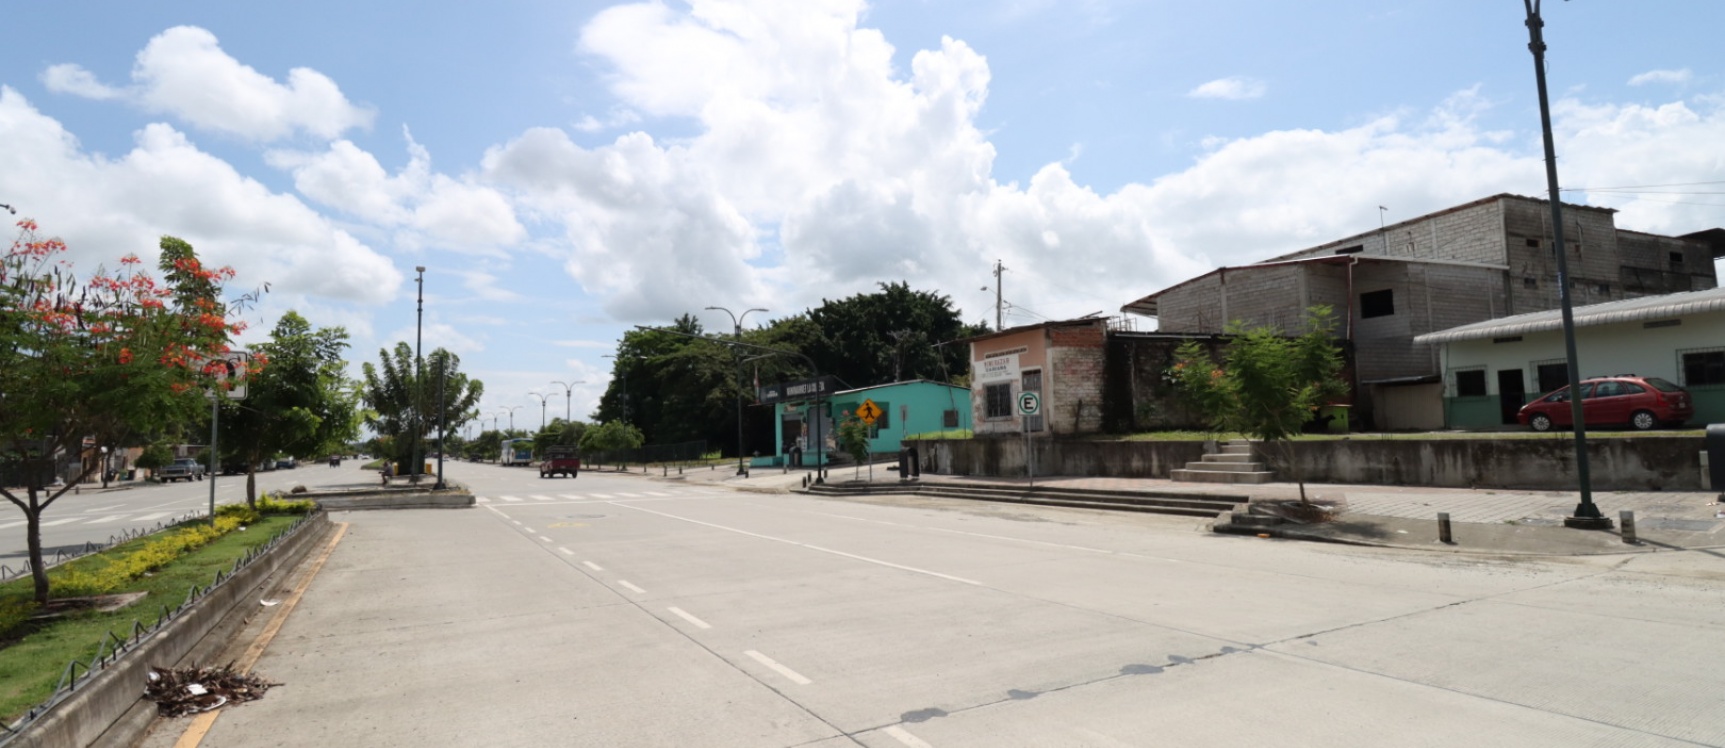 GeoBienes - Terreno en venta de uso residencial ubicado en Vía Daule - Plusvalia Guayaquil Casas de venta y alquiler Inmobiliaria Ecuador